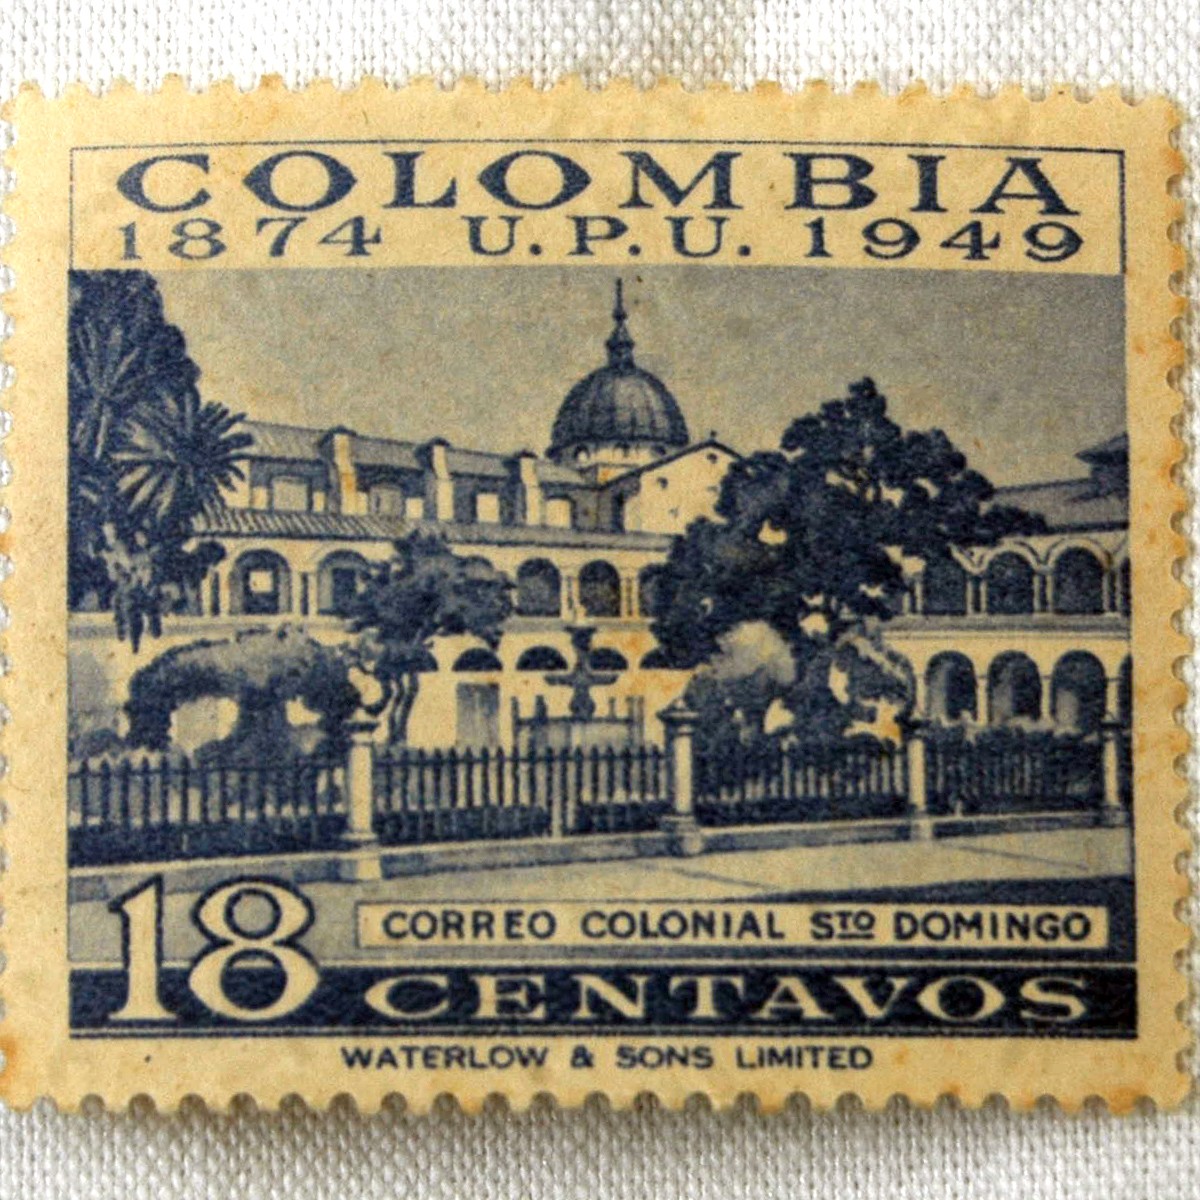 correo colonial